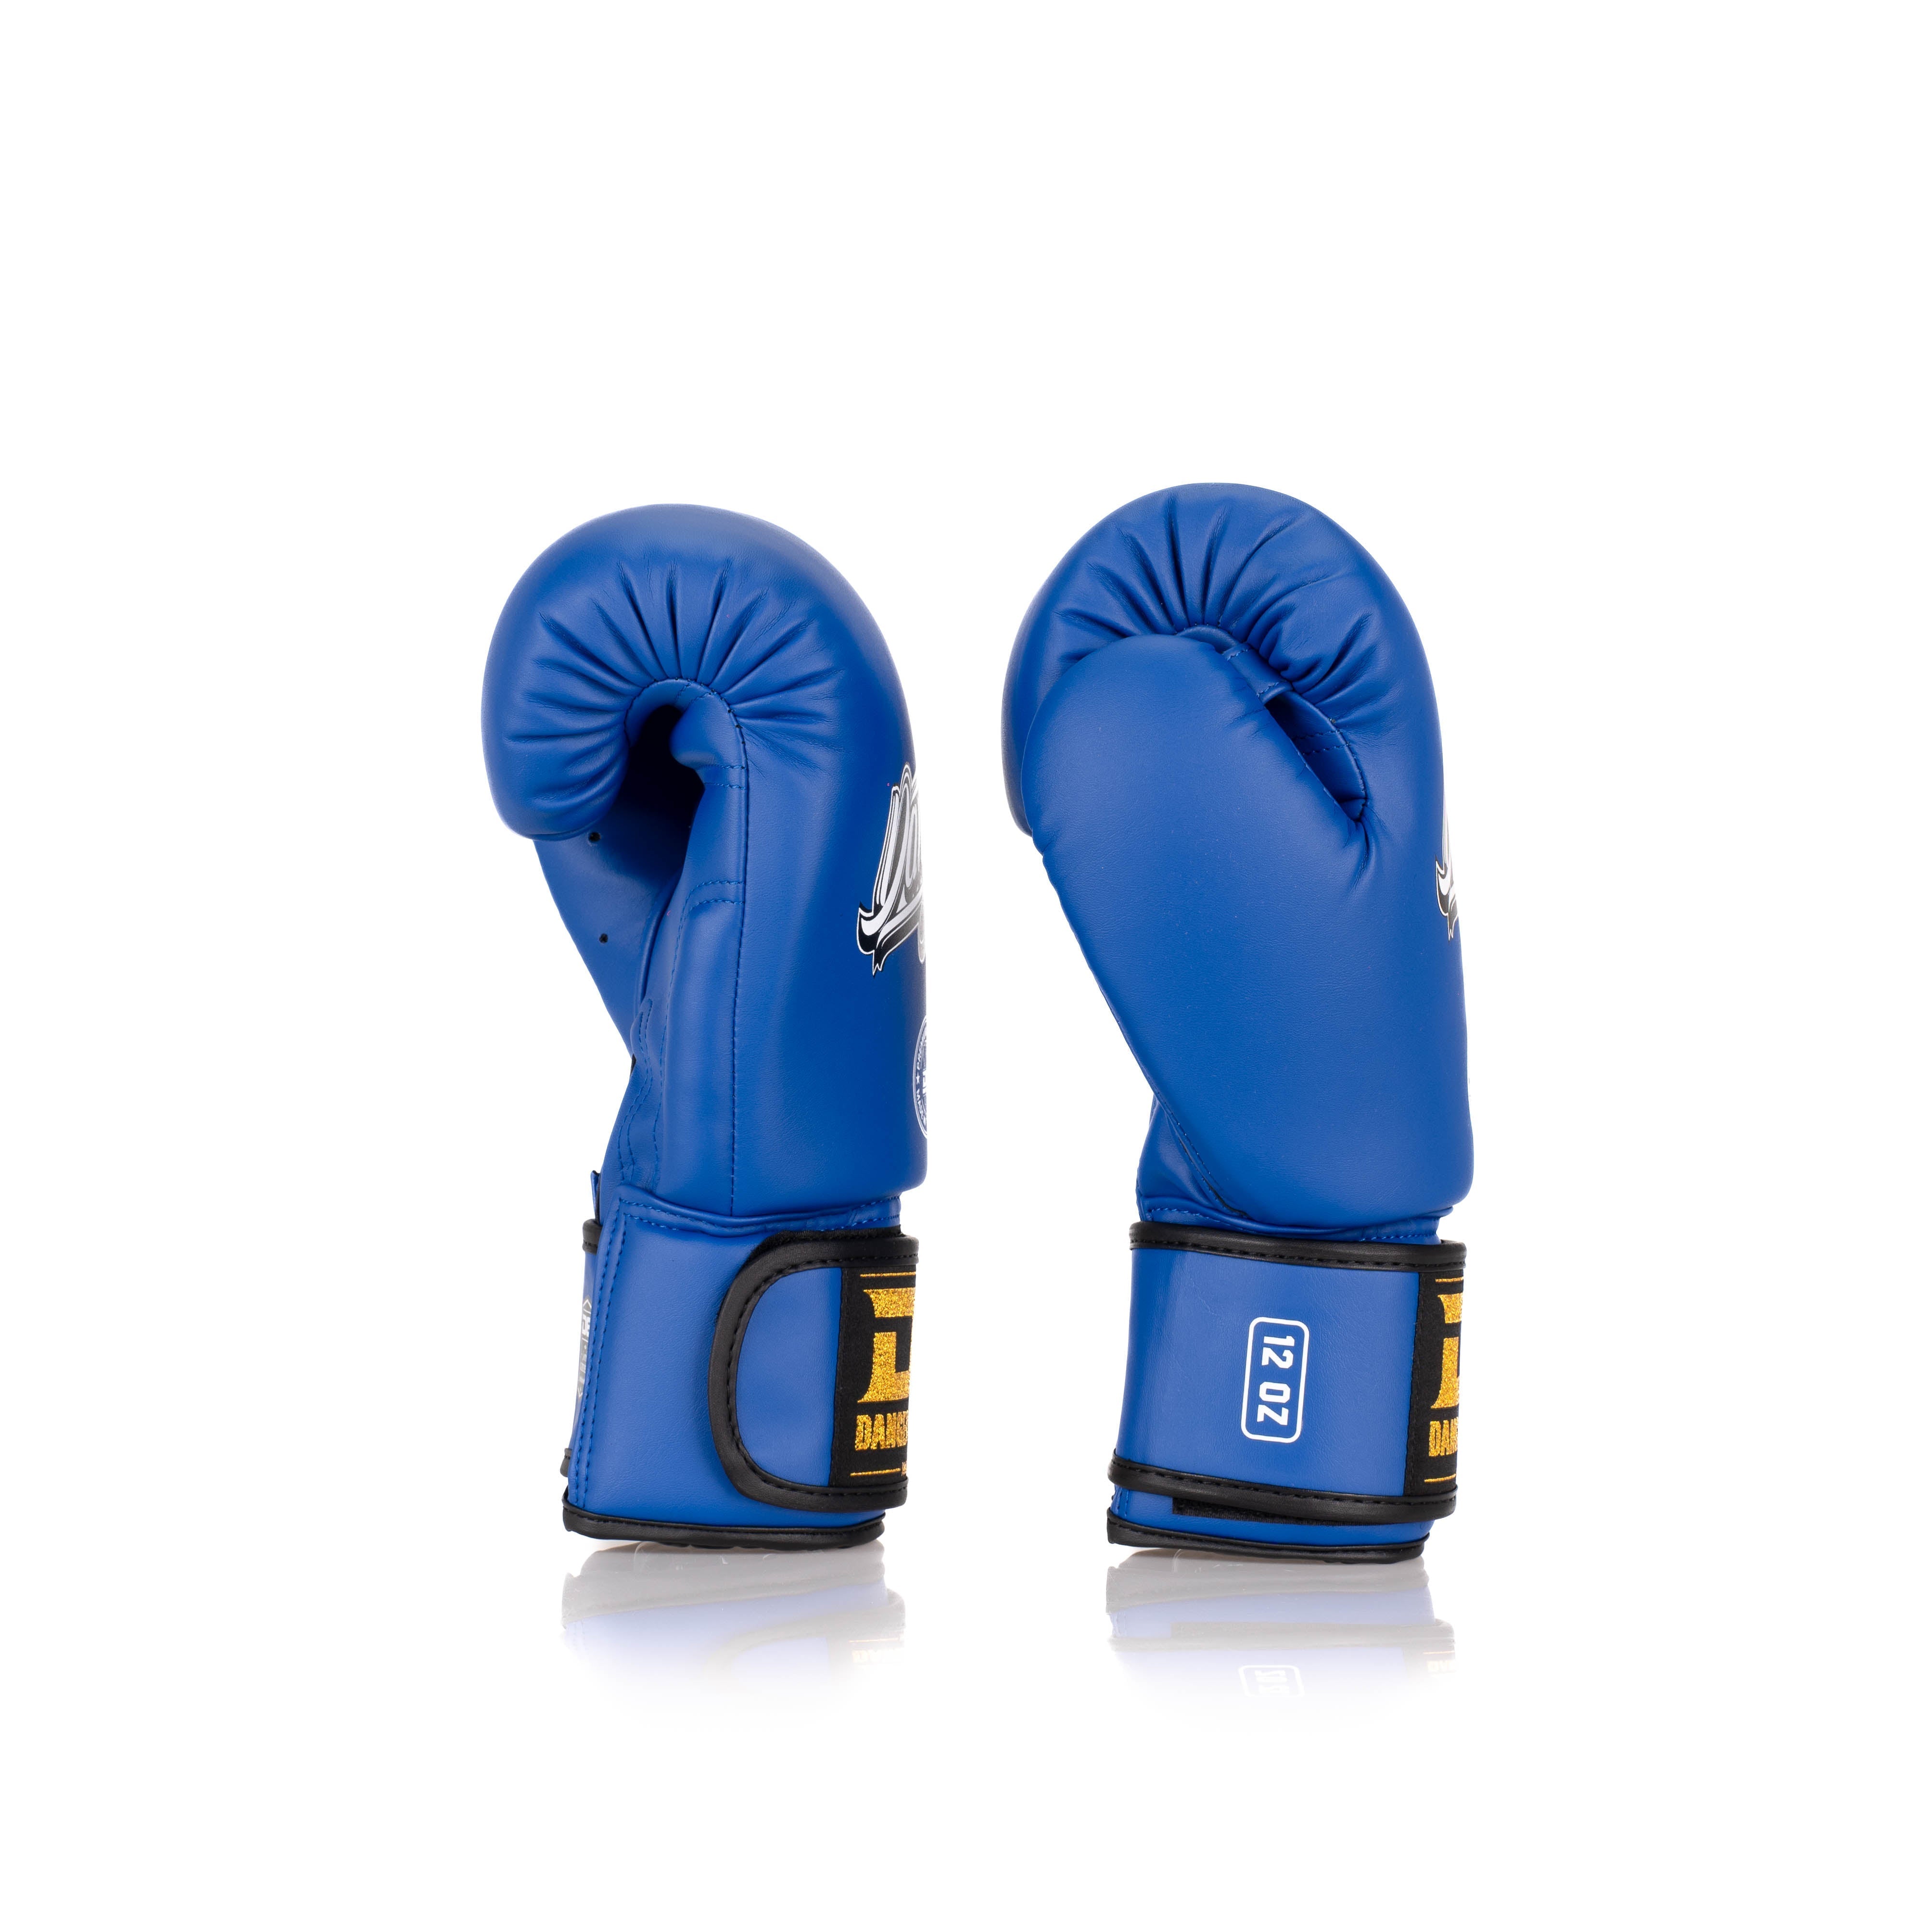  Blue Danger Equipment Classic Thai Boxing Gloves Side